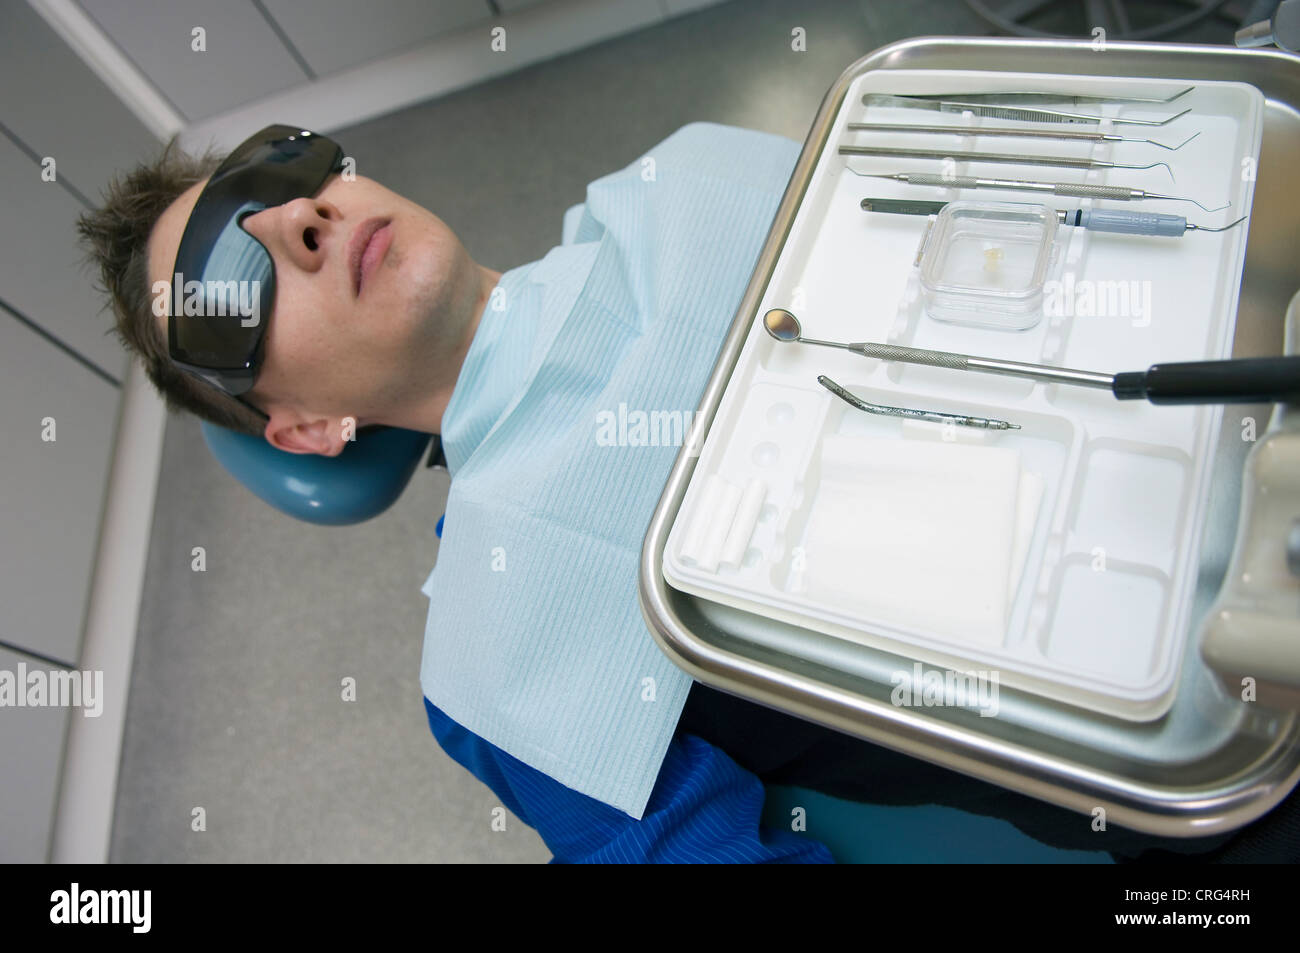 Young male patient dans le fauteuil du dentiste en face d'un plateau d'instruments dentaires Banque D'Images